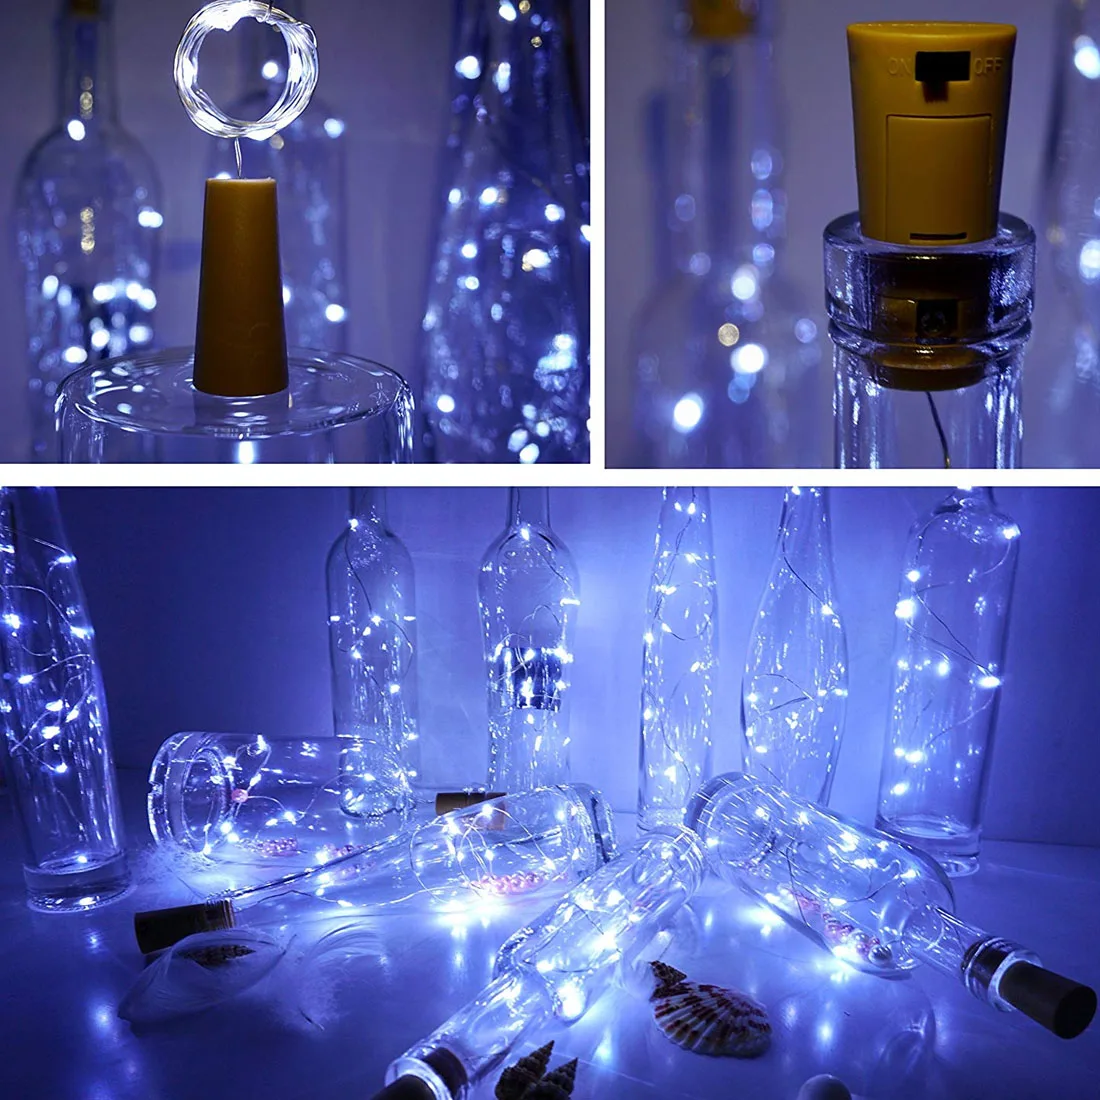 20 светодиодов/15 светодиодов для винных бутылок гирлянда в бутылке пробковая батарея питание Звездное DIY рождественские гирлянды огни для вечерние Хэллоуин Свадьба